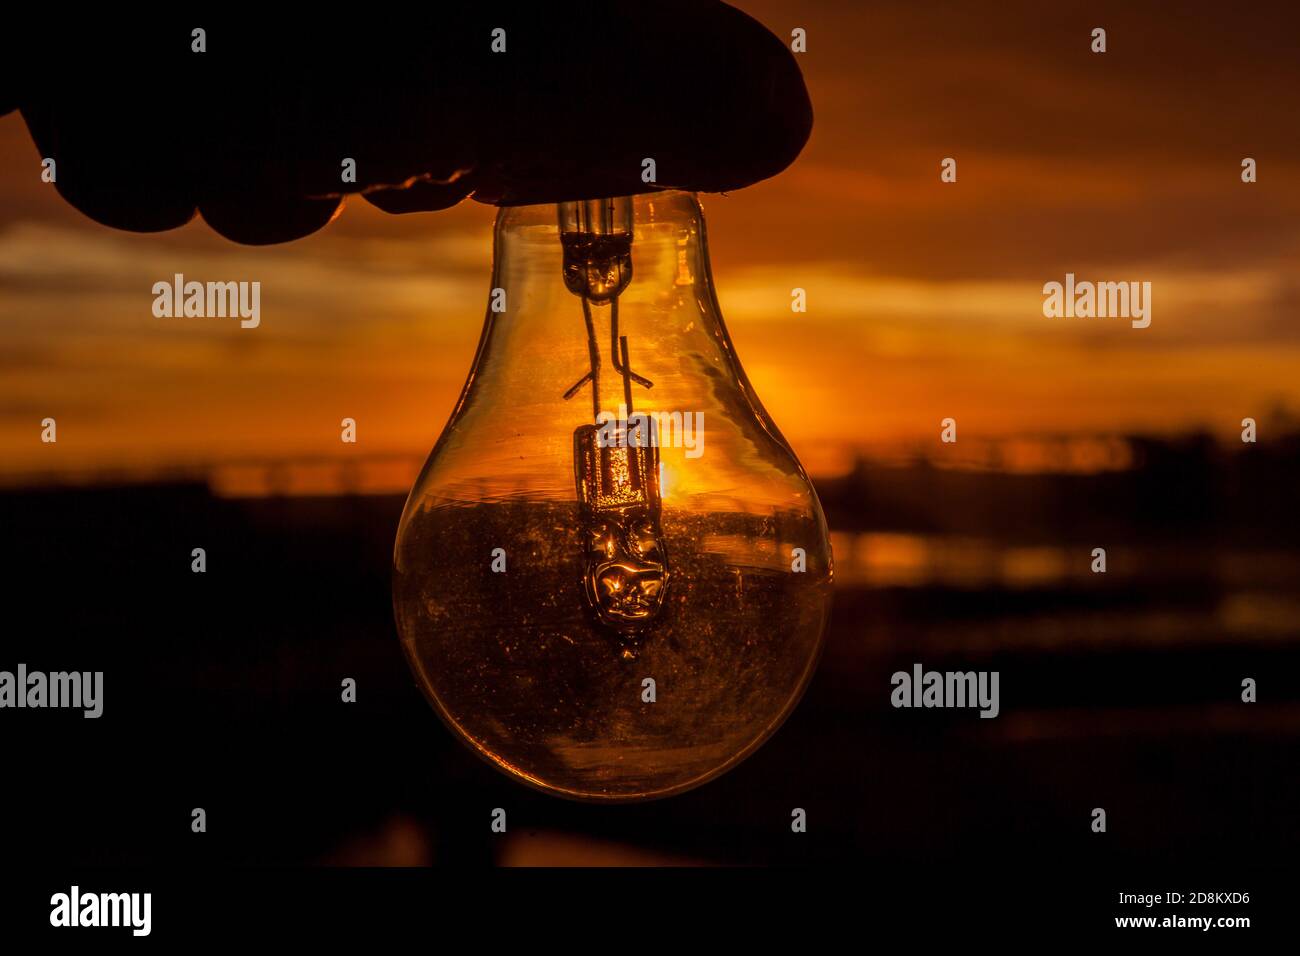 Hand hält eine Glühbirne bei Sonnenaufgang Stockfotografie - Alamy